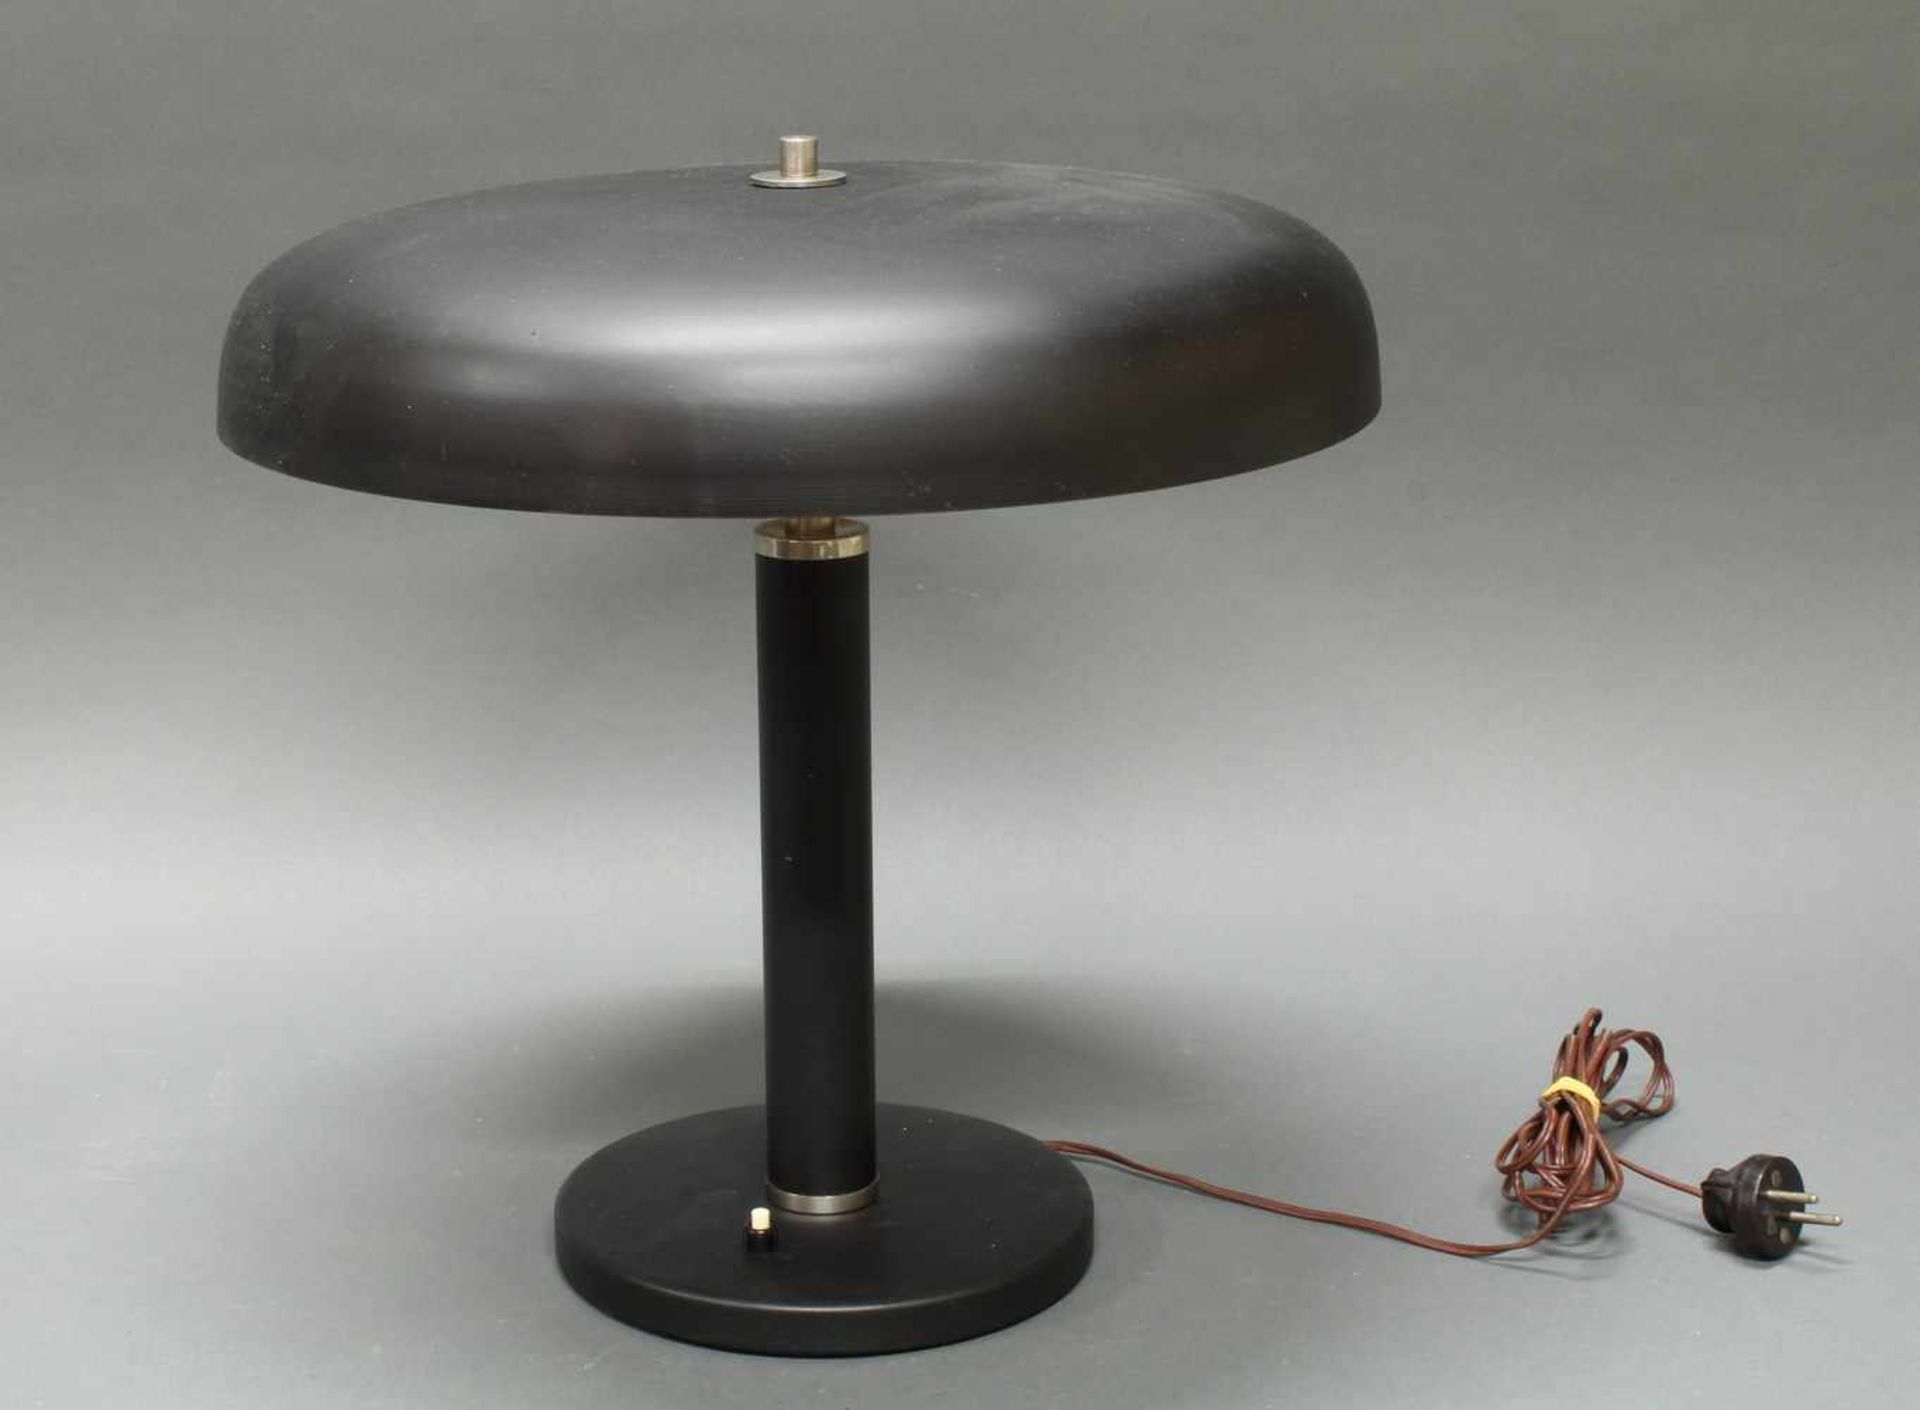 Tischlampe, Art Deco, um 1920/30, Schirm und Fuß Metall schwarz mattiert, Chromabsatz, einflammig,